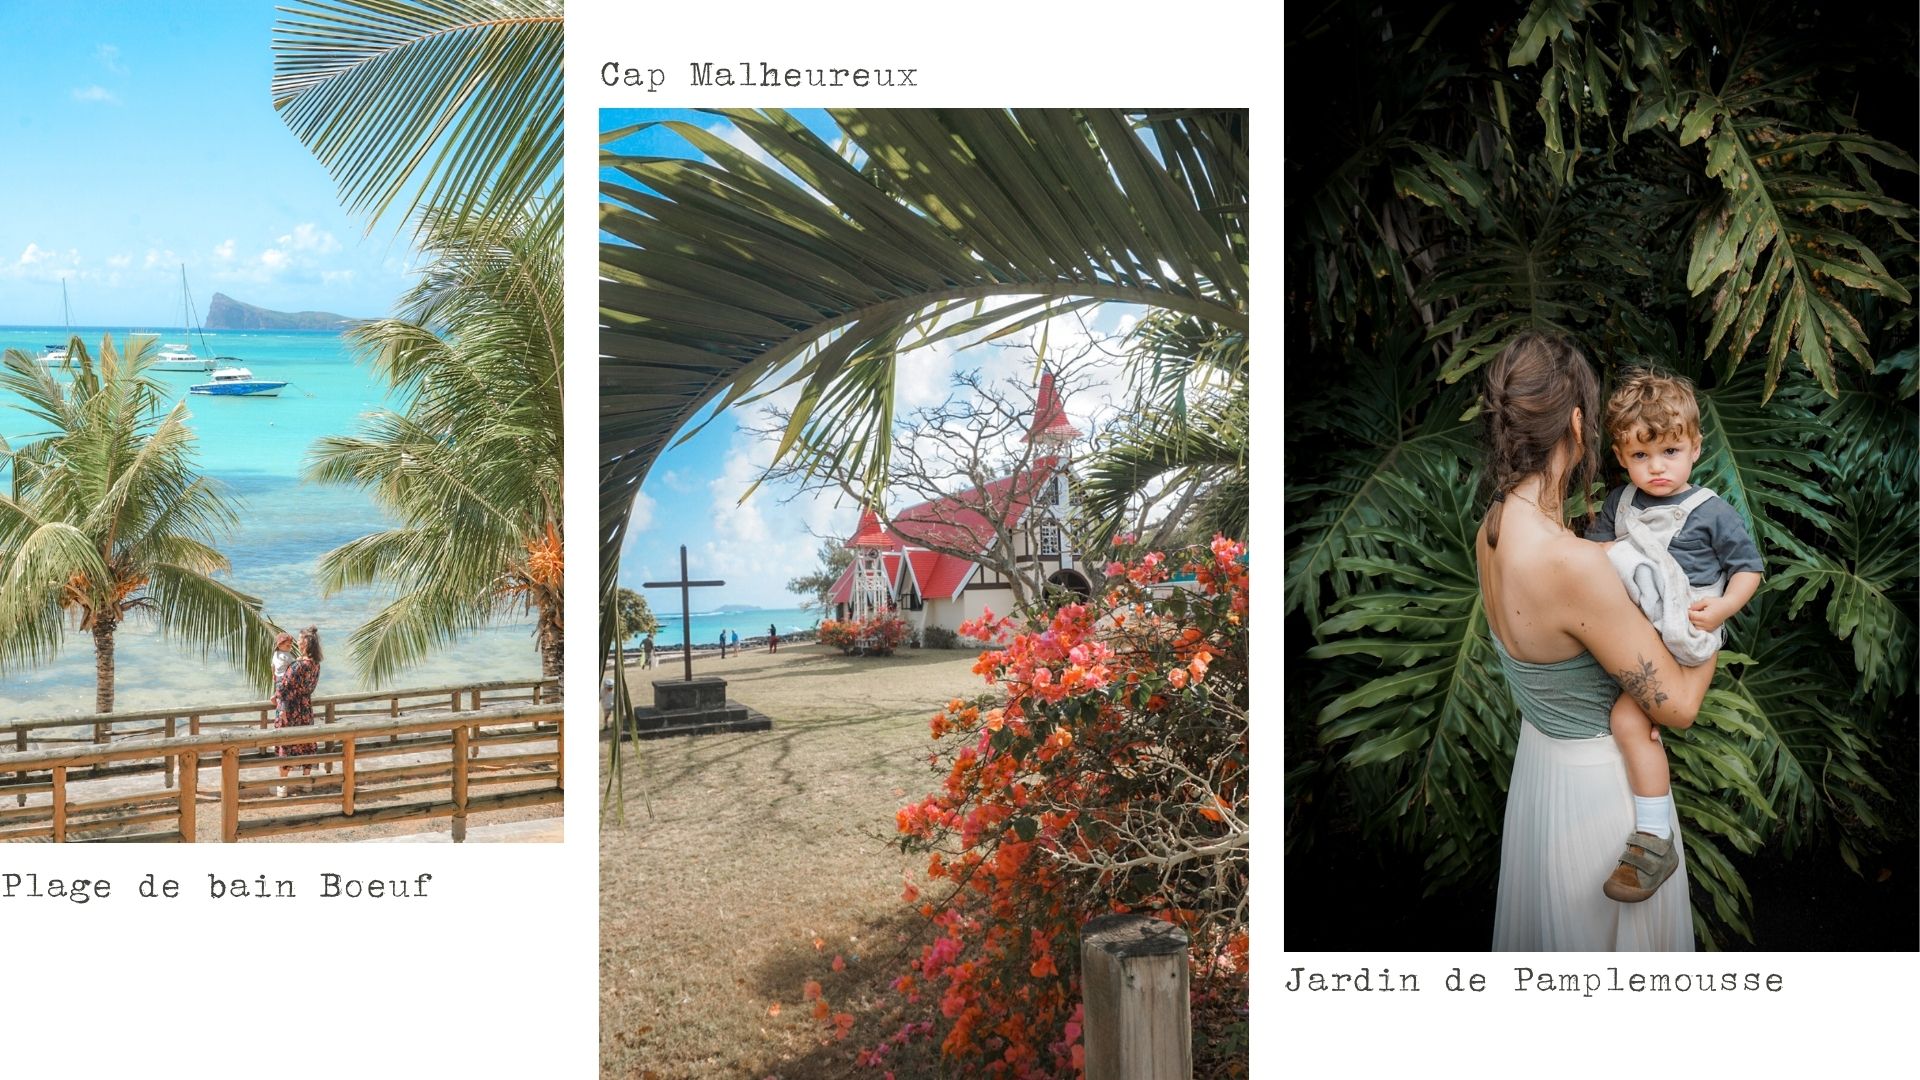 visiter le Nord de l'île Maurice, Cap Malheureux, jardin de Paplemousse